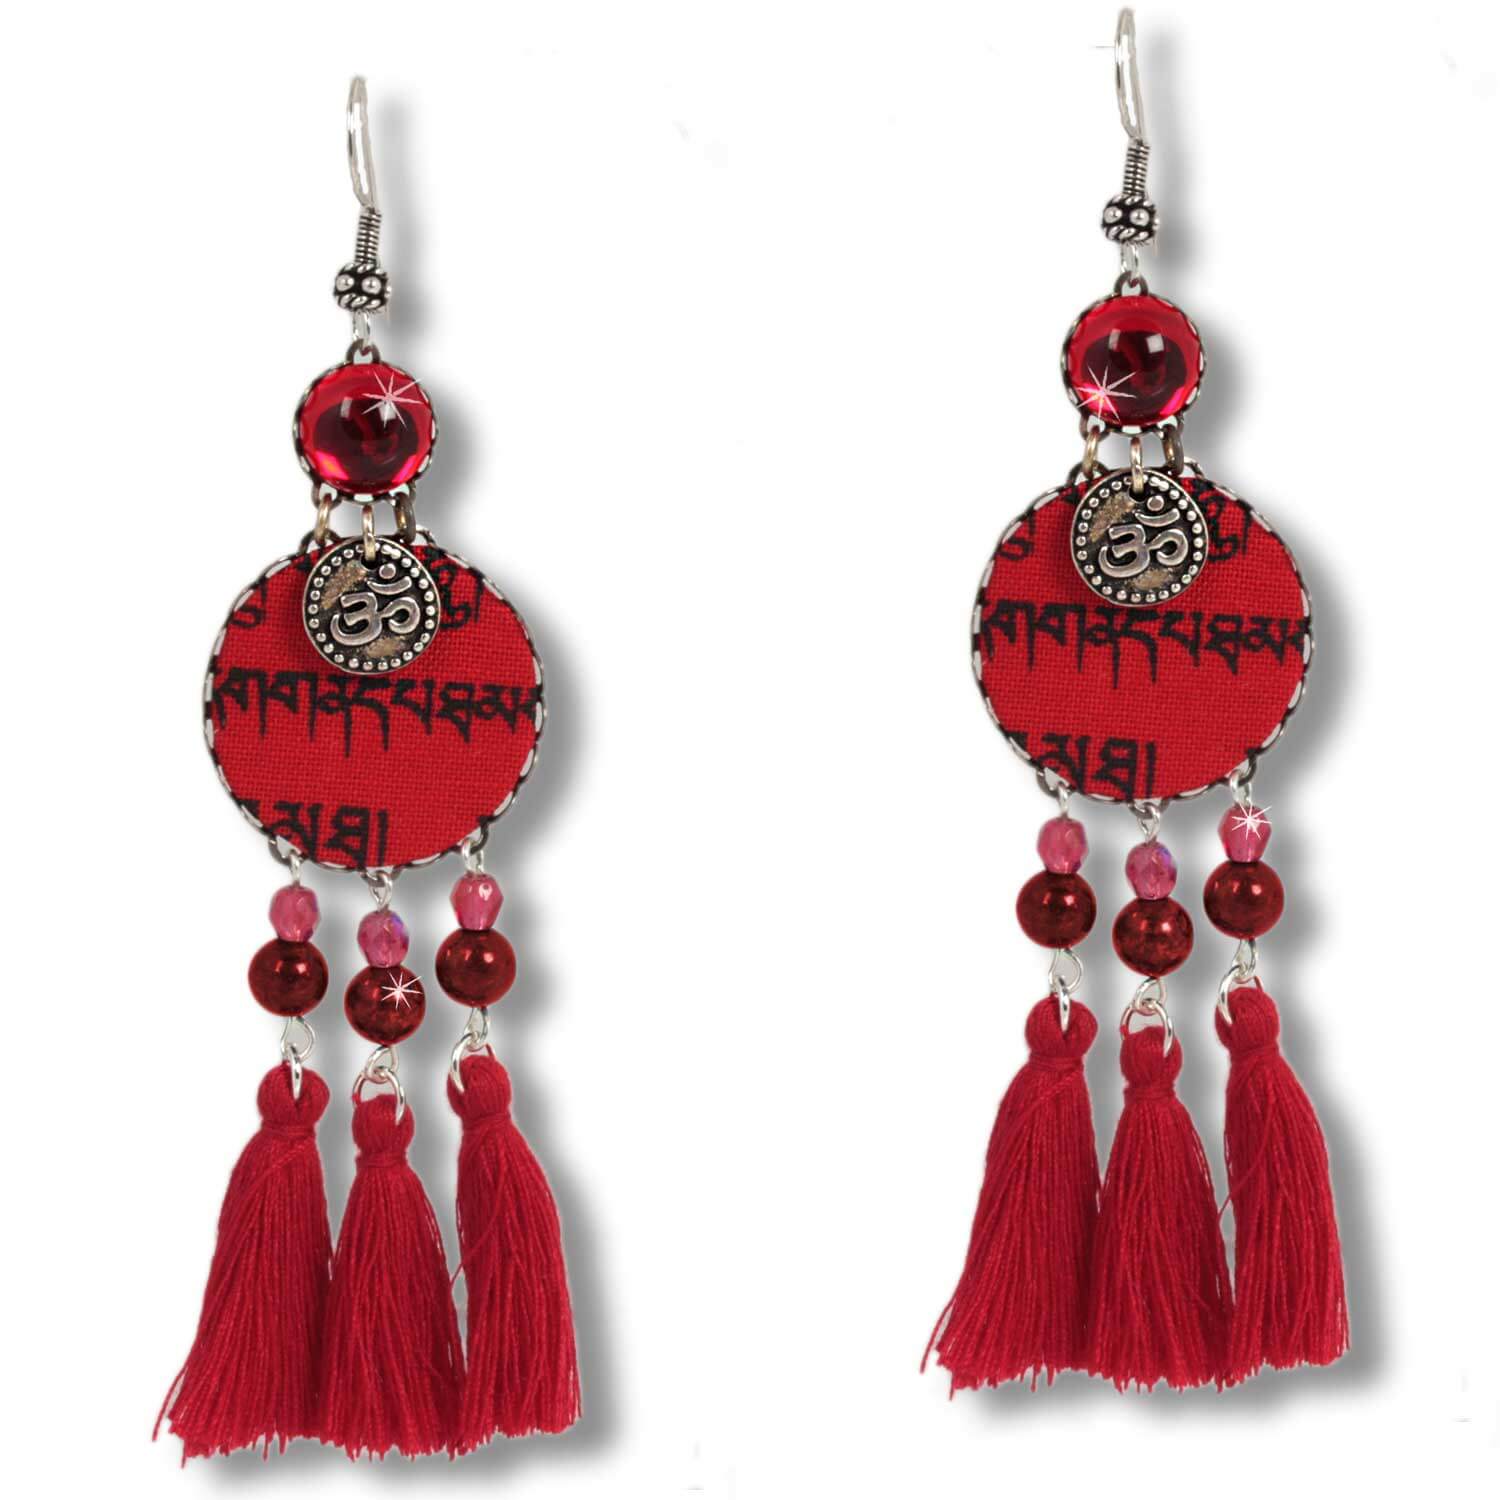 Fire Tashi - Tibetan Wish earrings with coral